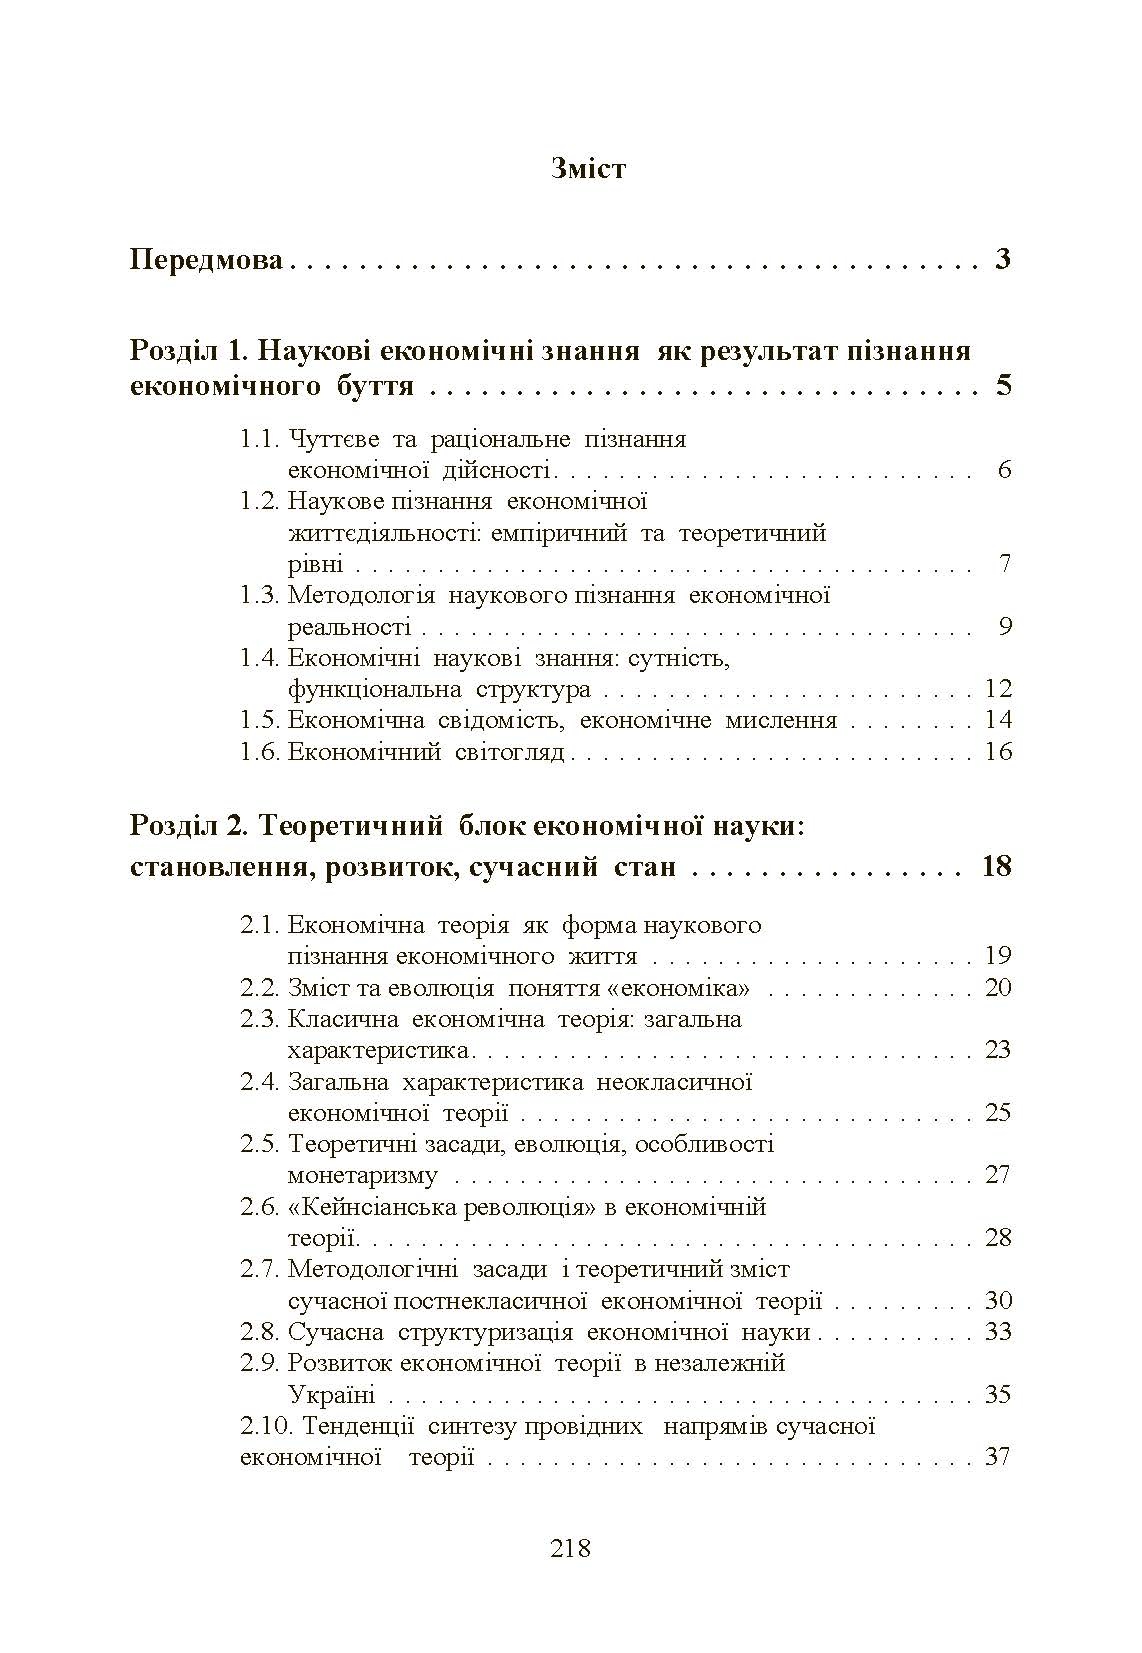 Економічна теорія. Касьяненко Л.М.  (2019 год). Автор — Касьяненко Л.М.. 